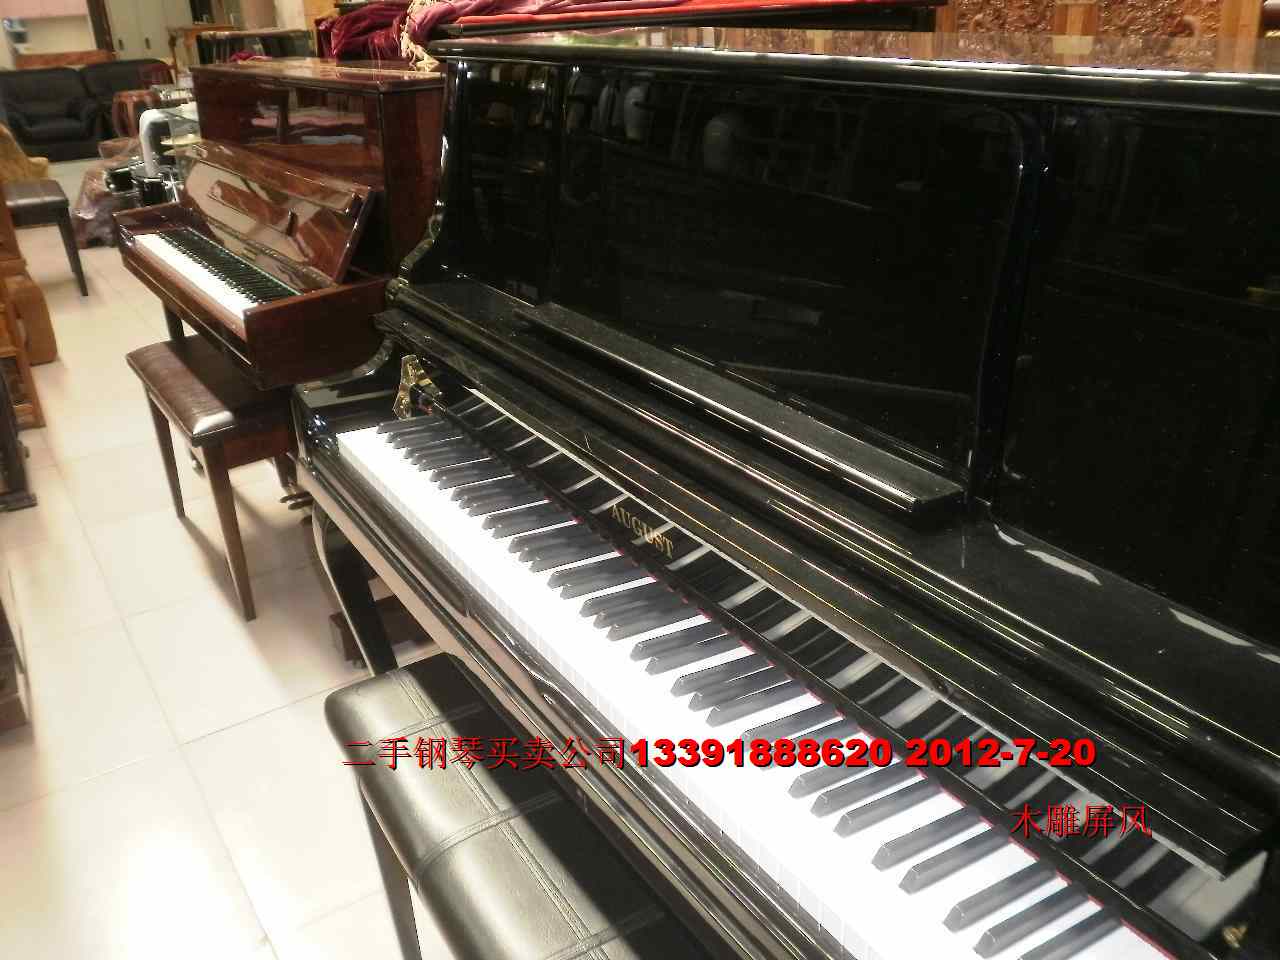 雅马哈钢琴 卡哇伊钢琴星海钢琴珠江钢琴批发 钢琴出售租赁图片